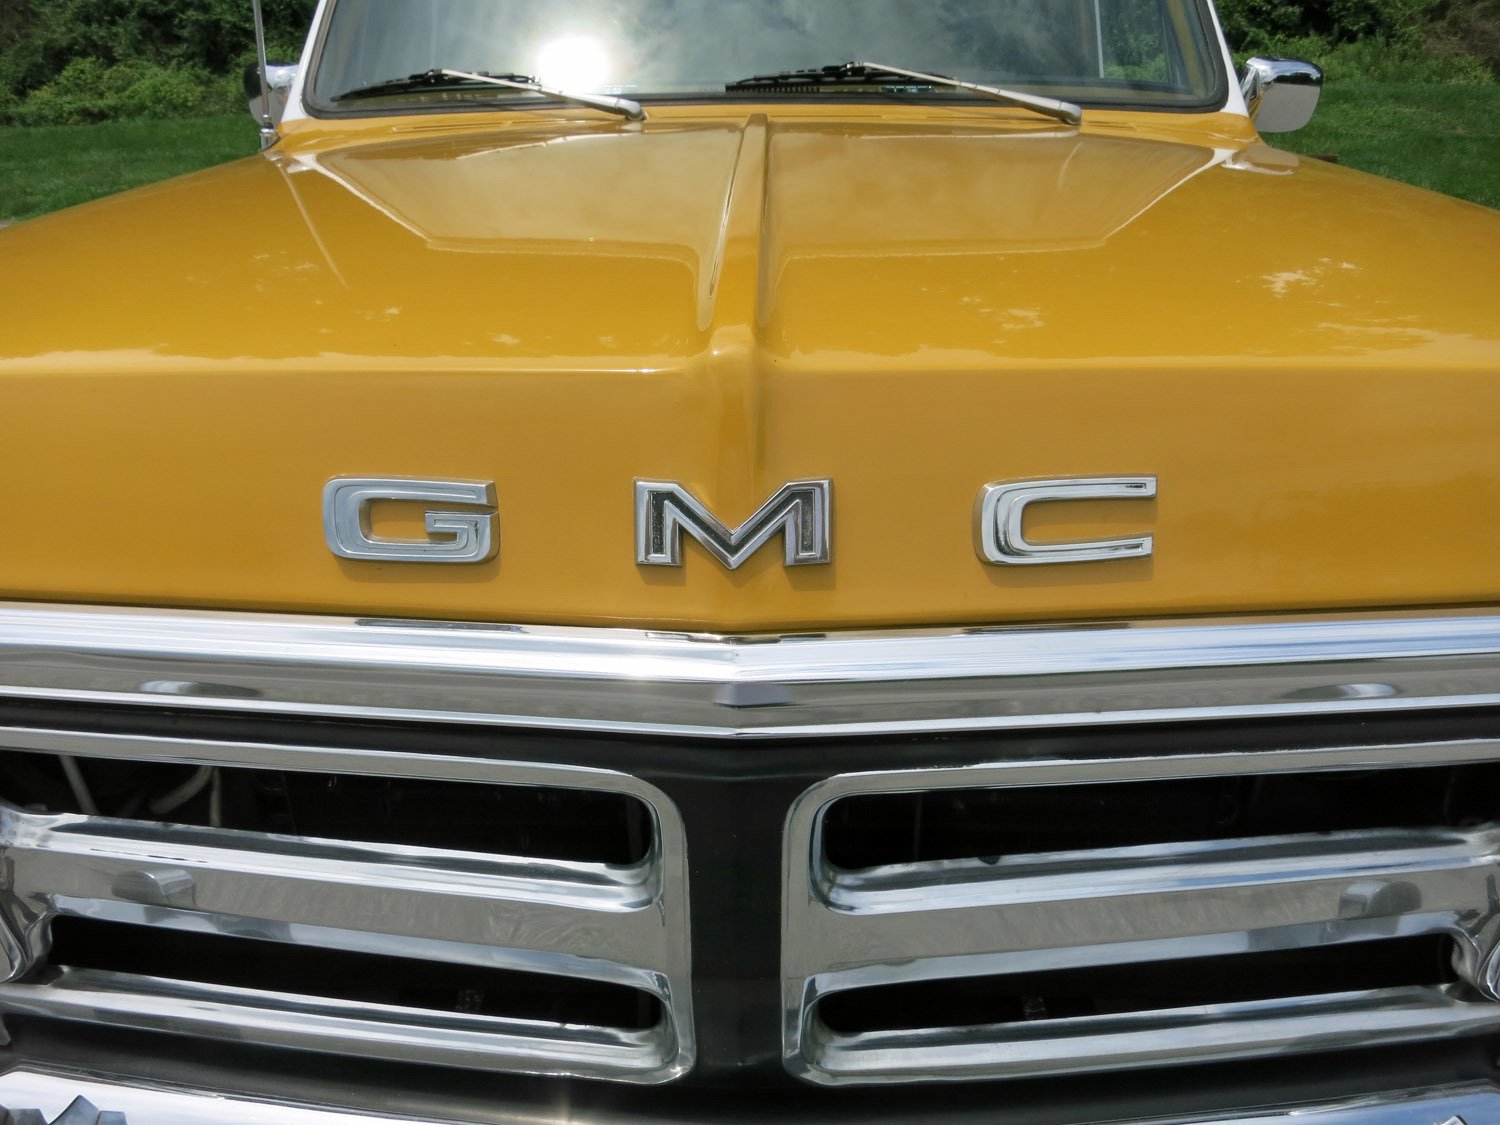 1972 GMC 1500